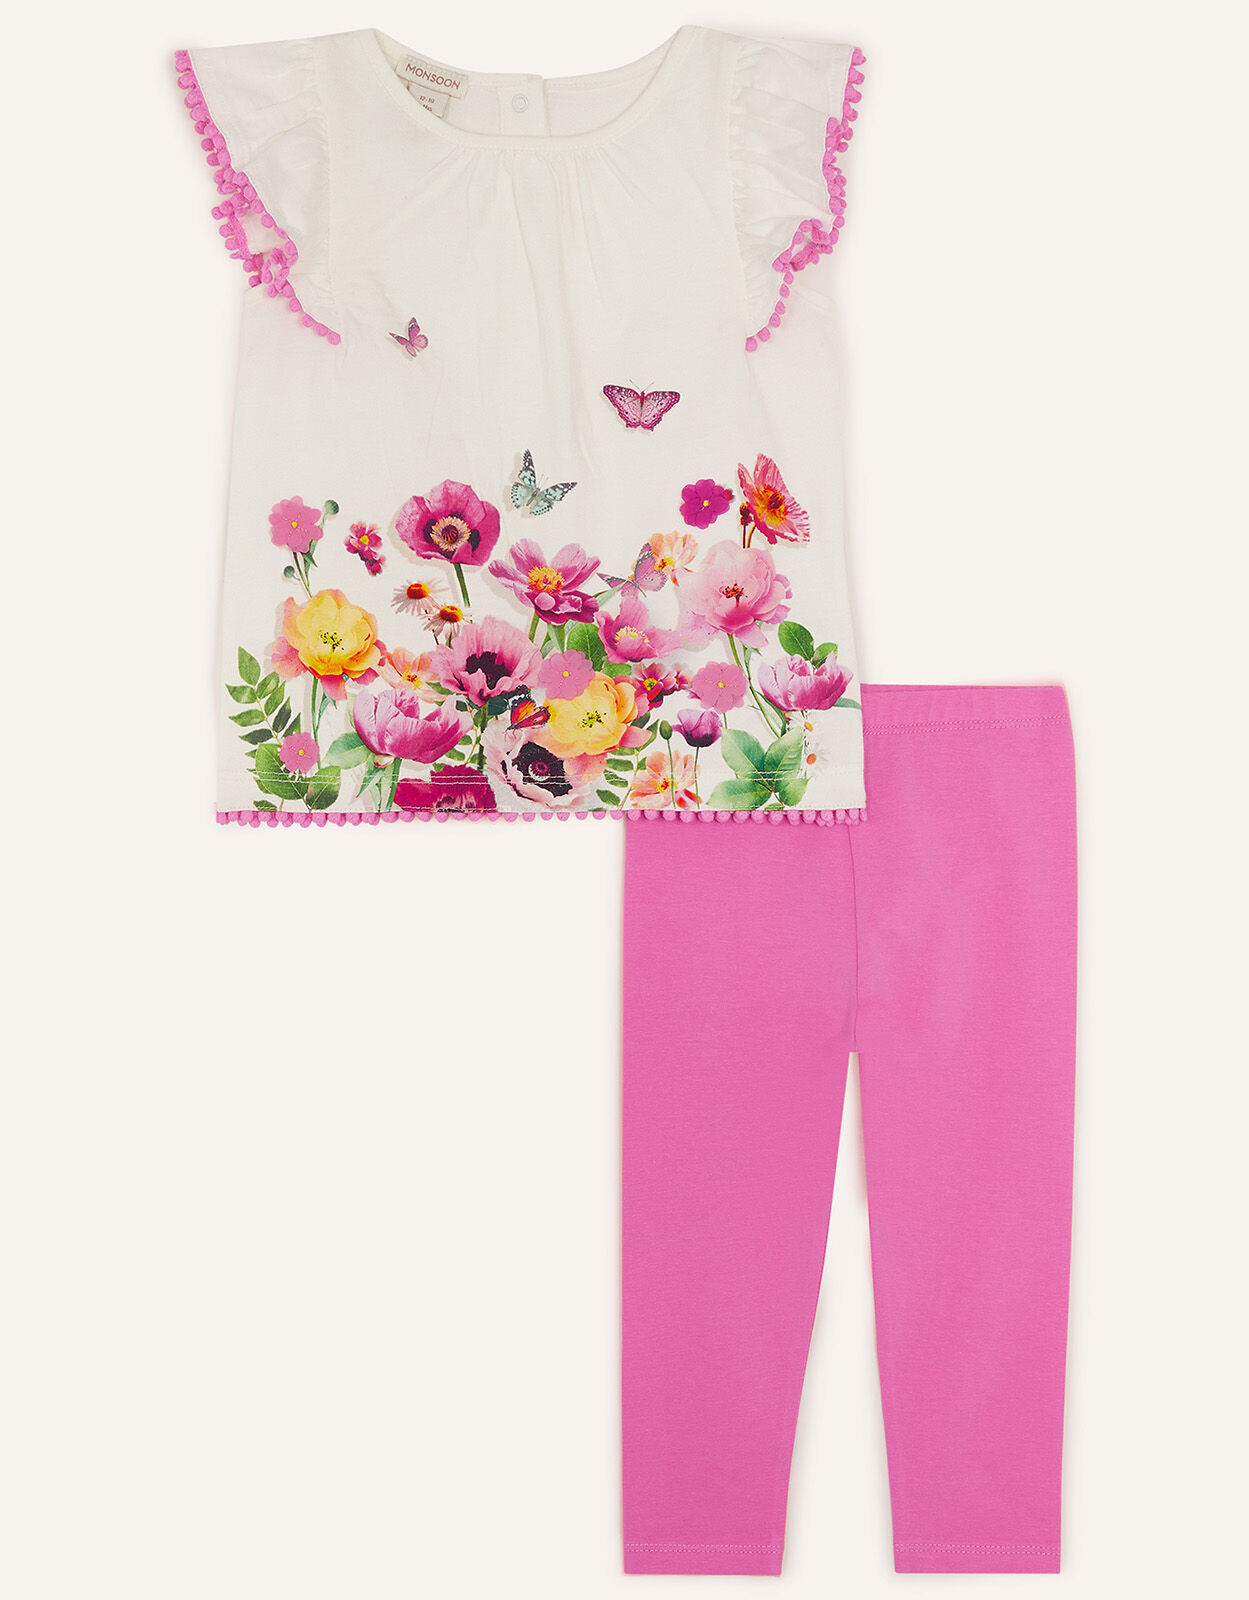 Minoti Filles Outfit Set Top et legging rose 100% Coton Doux 0-12 mois 